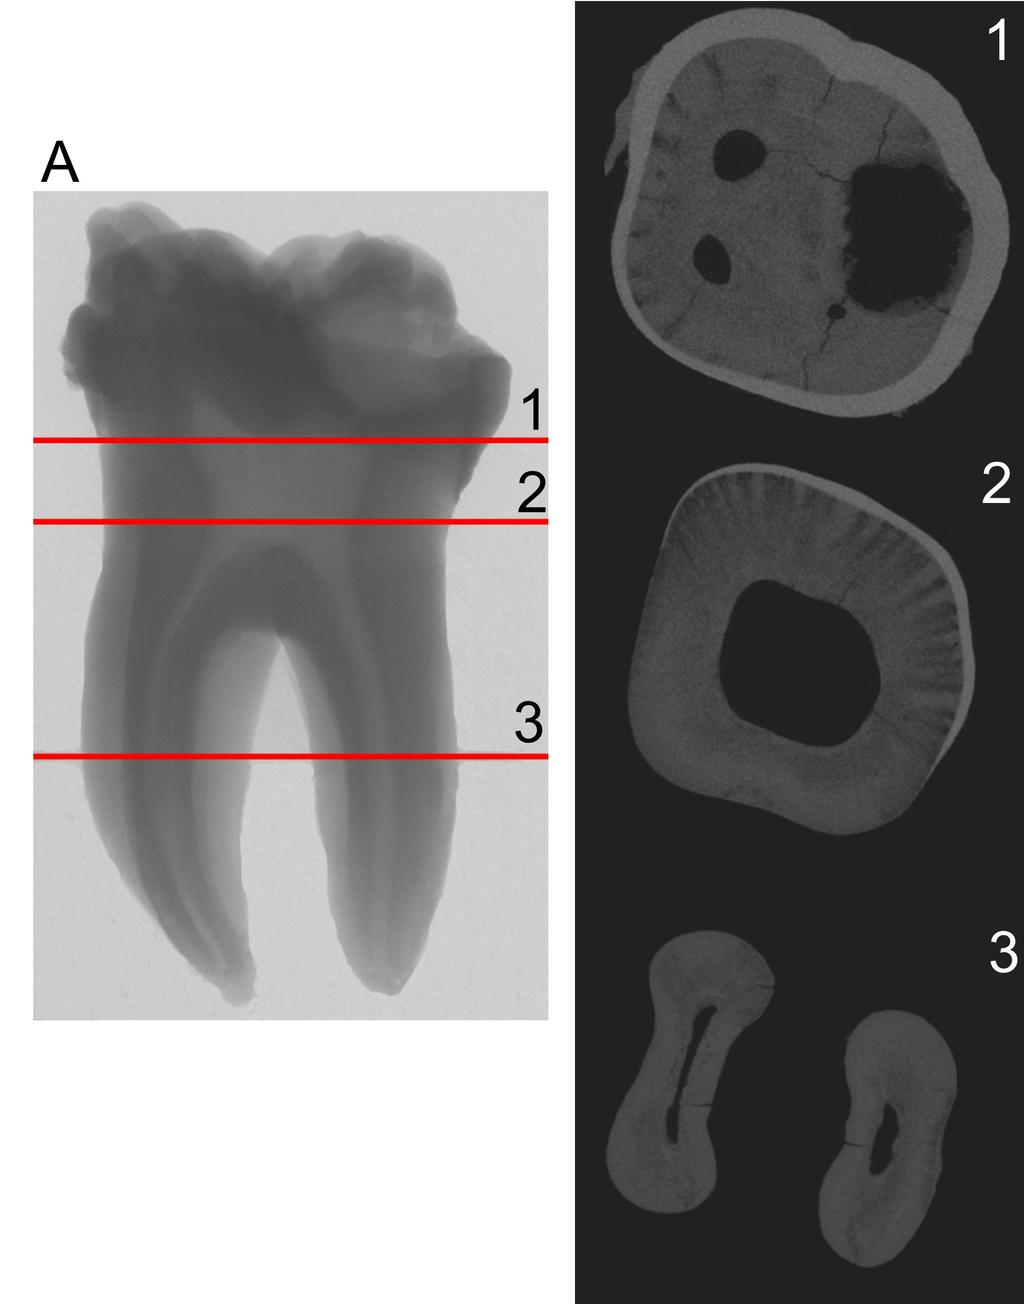 Rys. 2.2. Przykładowa rekonstrukcja obrazu trzech wybranych przekrojów zęba trzonowego, zaznaczonych na rysunku A. Pomiar wykonany z rozdzielczością 13.